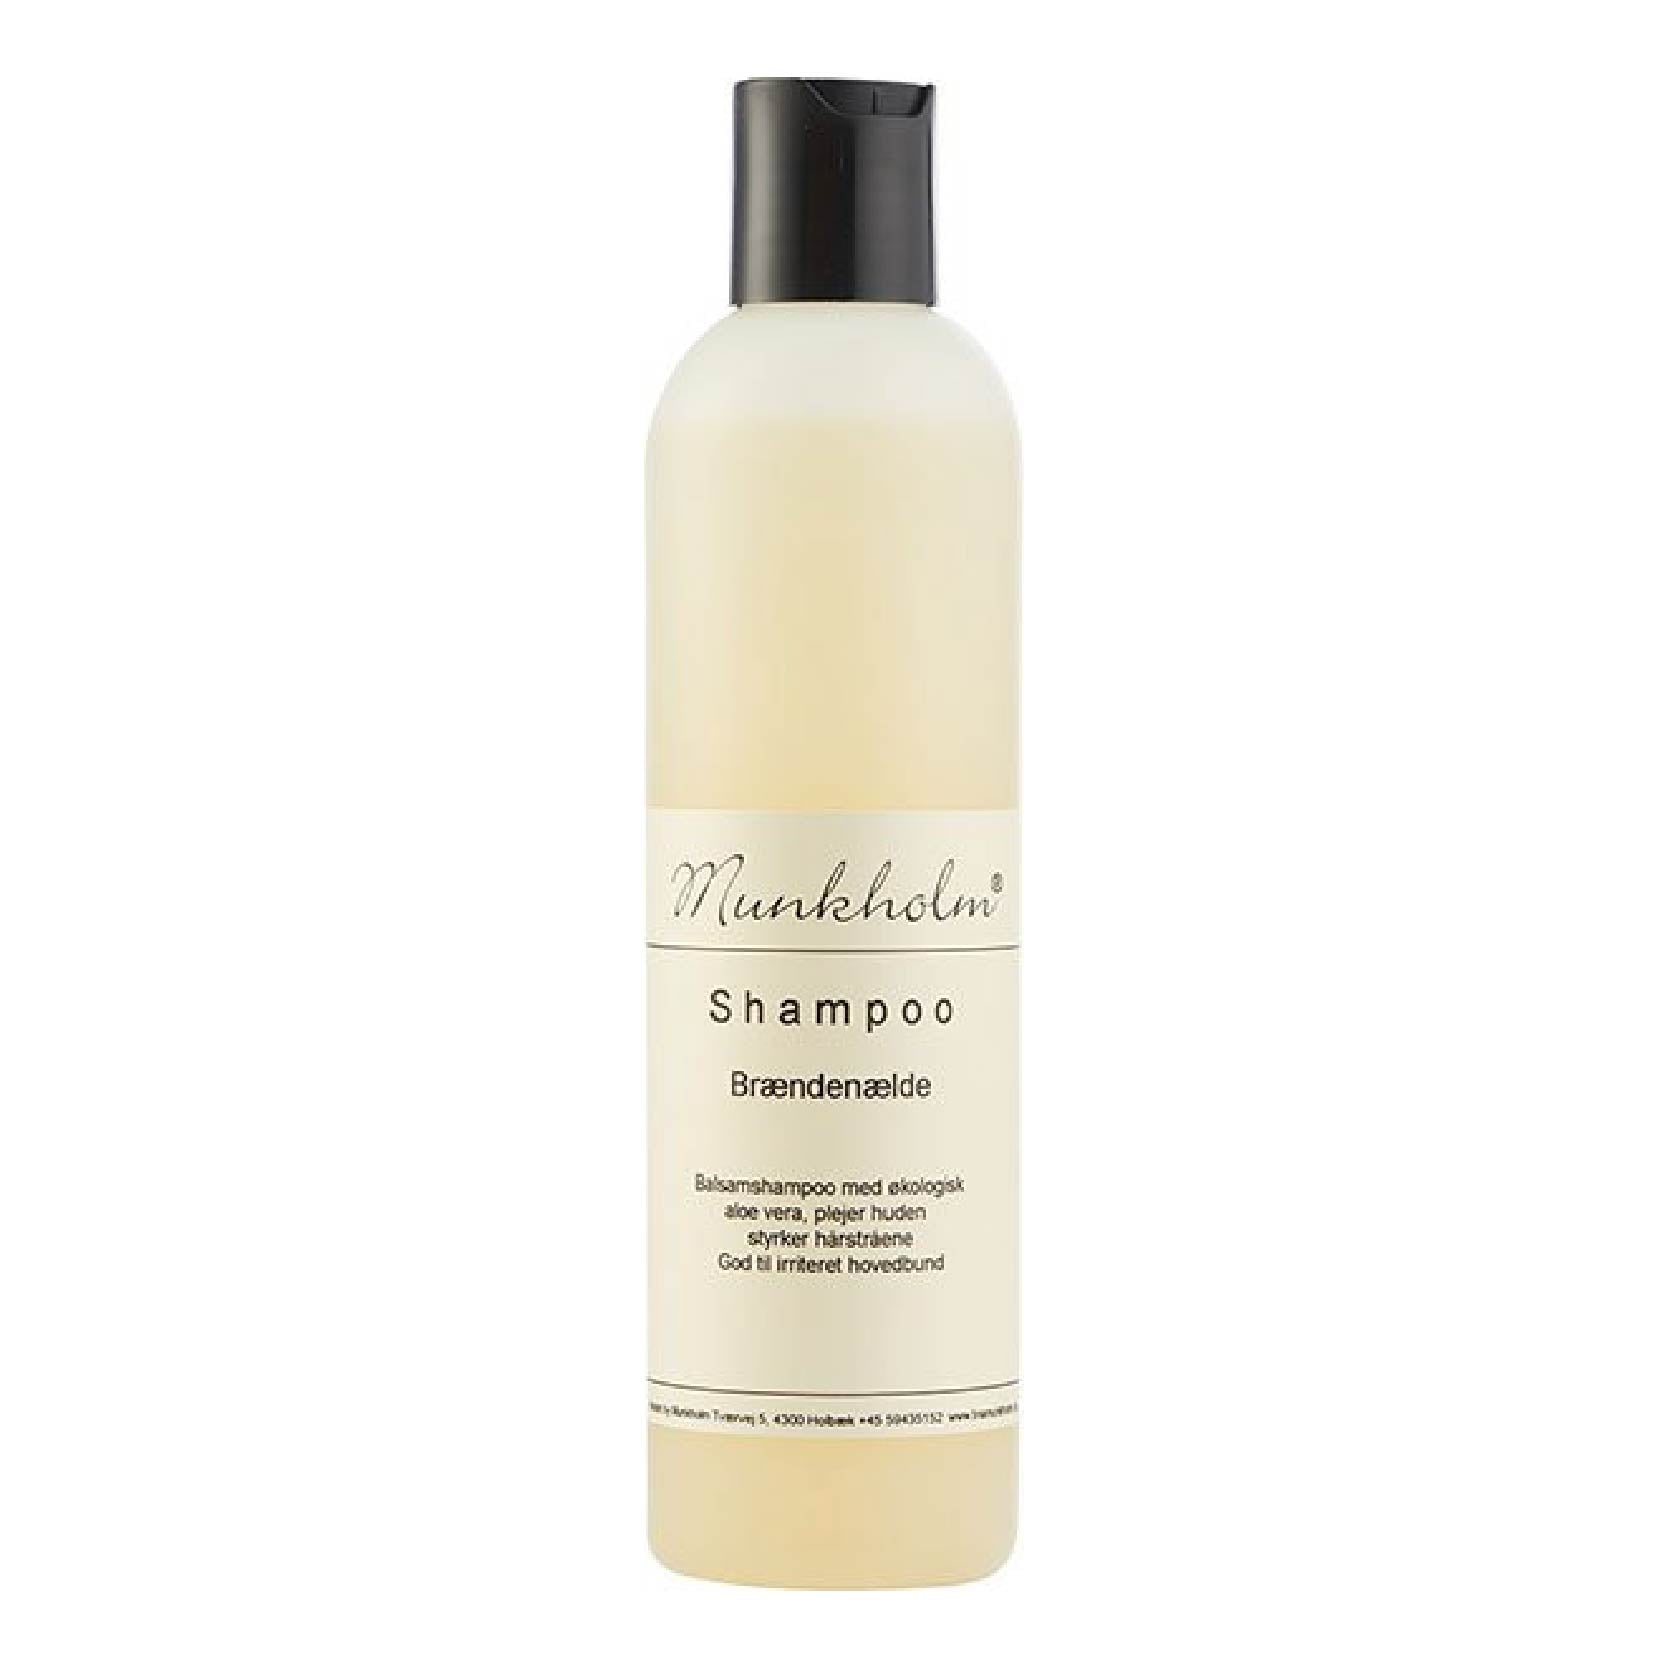 Shampoo - Brændenælde